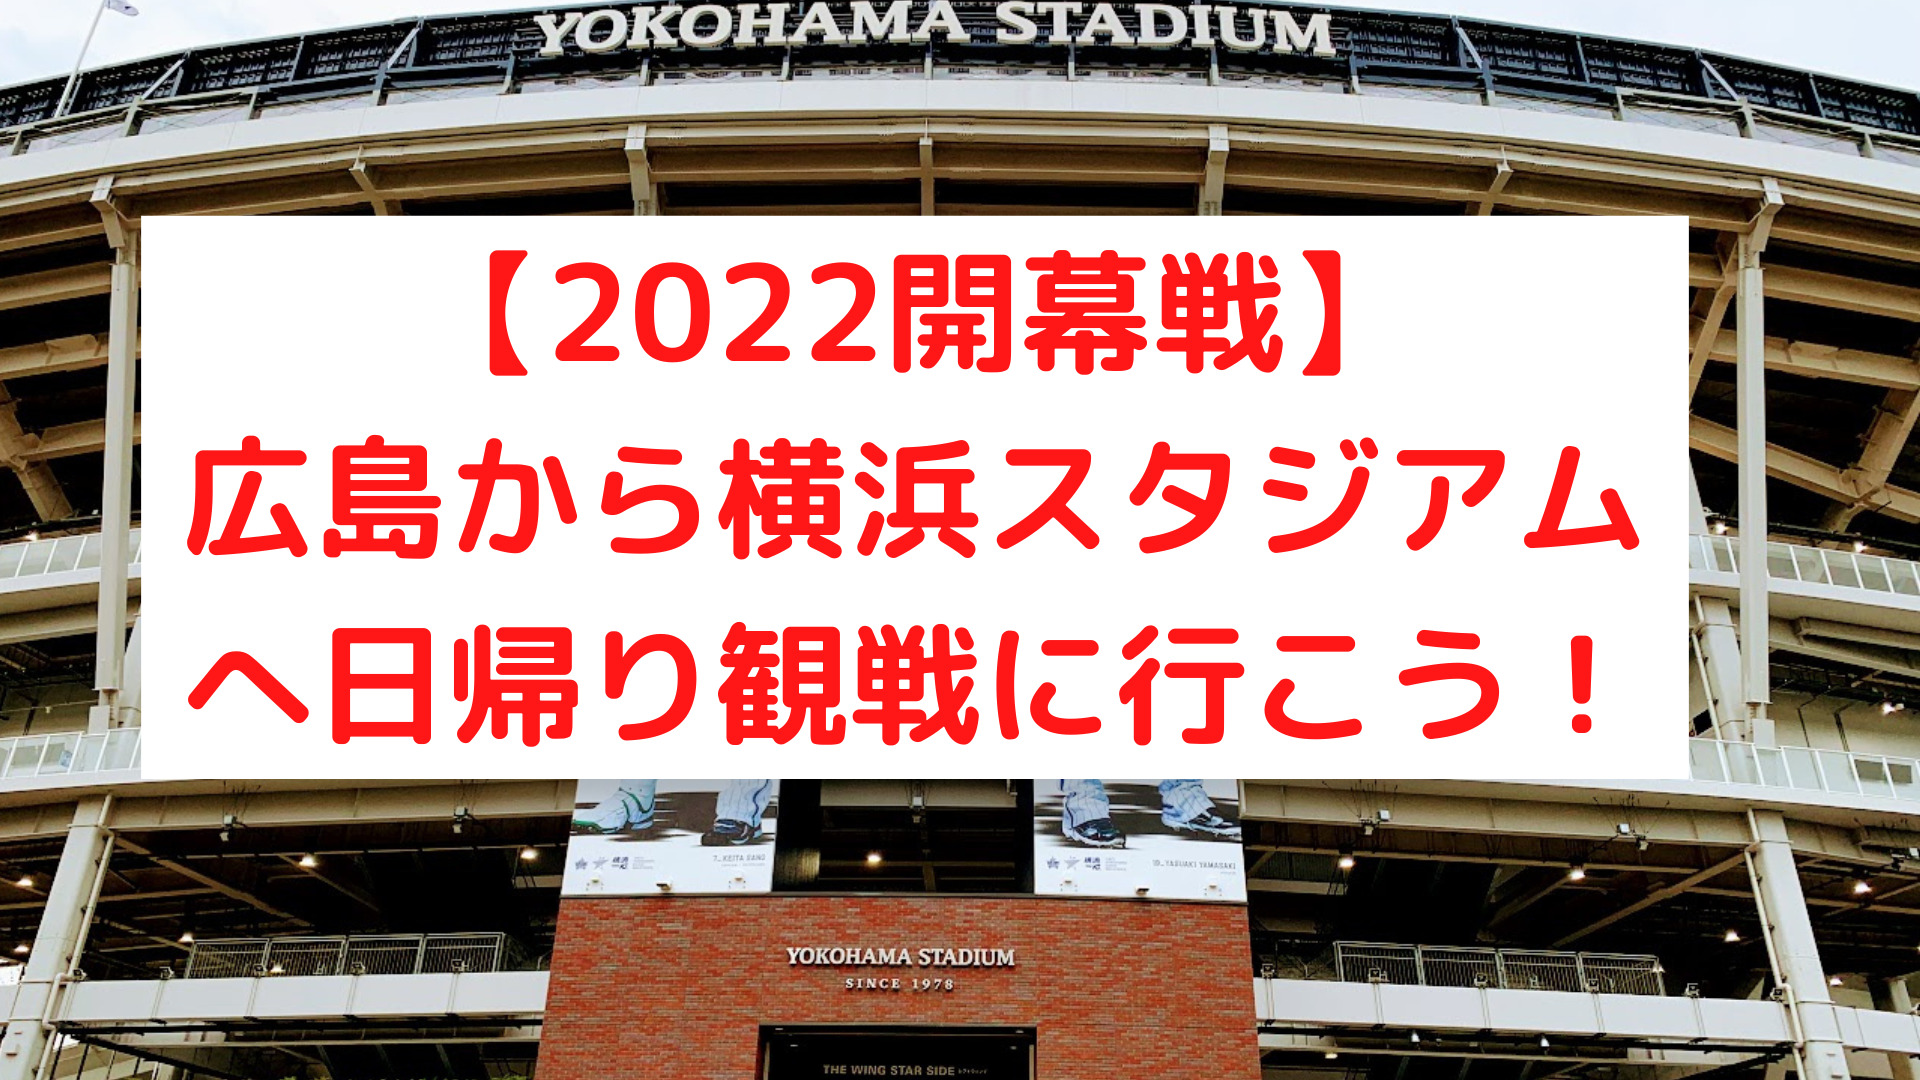 カープ22年開幕戦 日帰りで広島から横浜スタジアムで野球観戦することは可能 周辺観光スポットも紹介